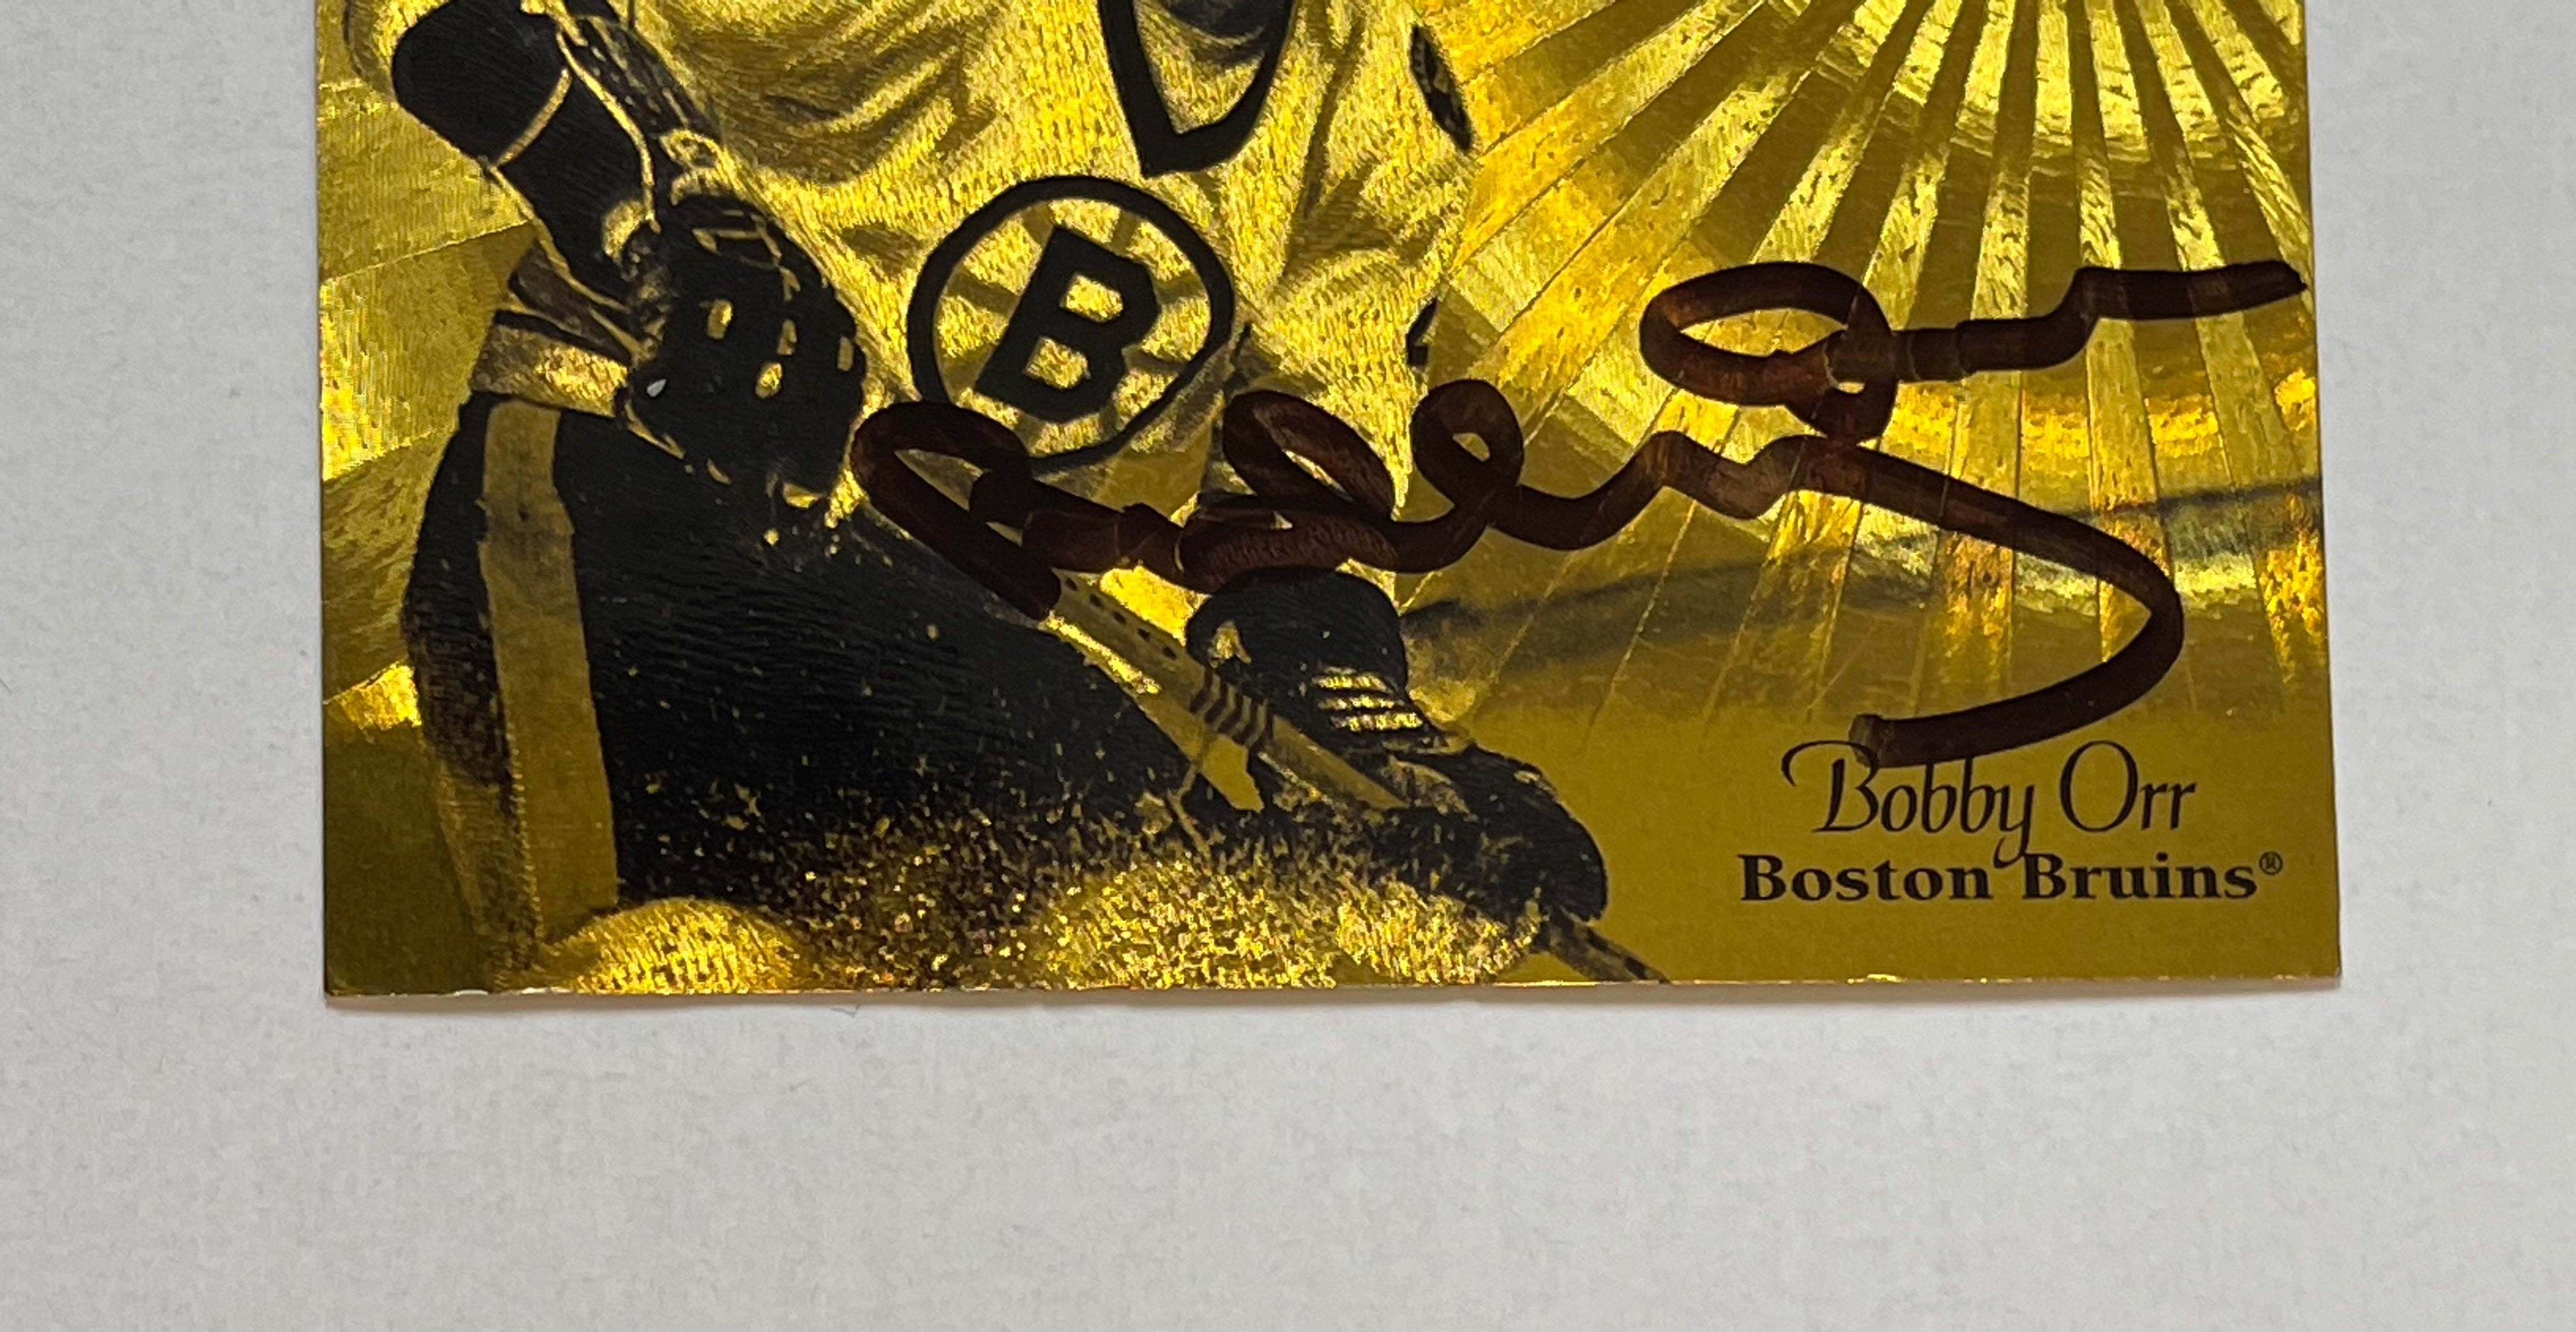 Bobby Orr NHL gold foil signed insert card